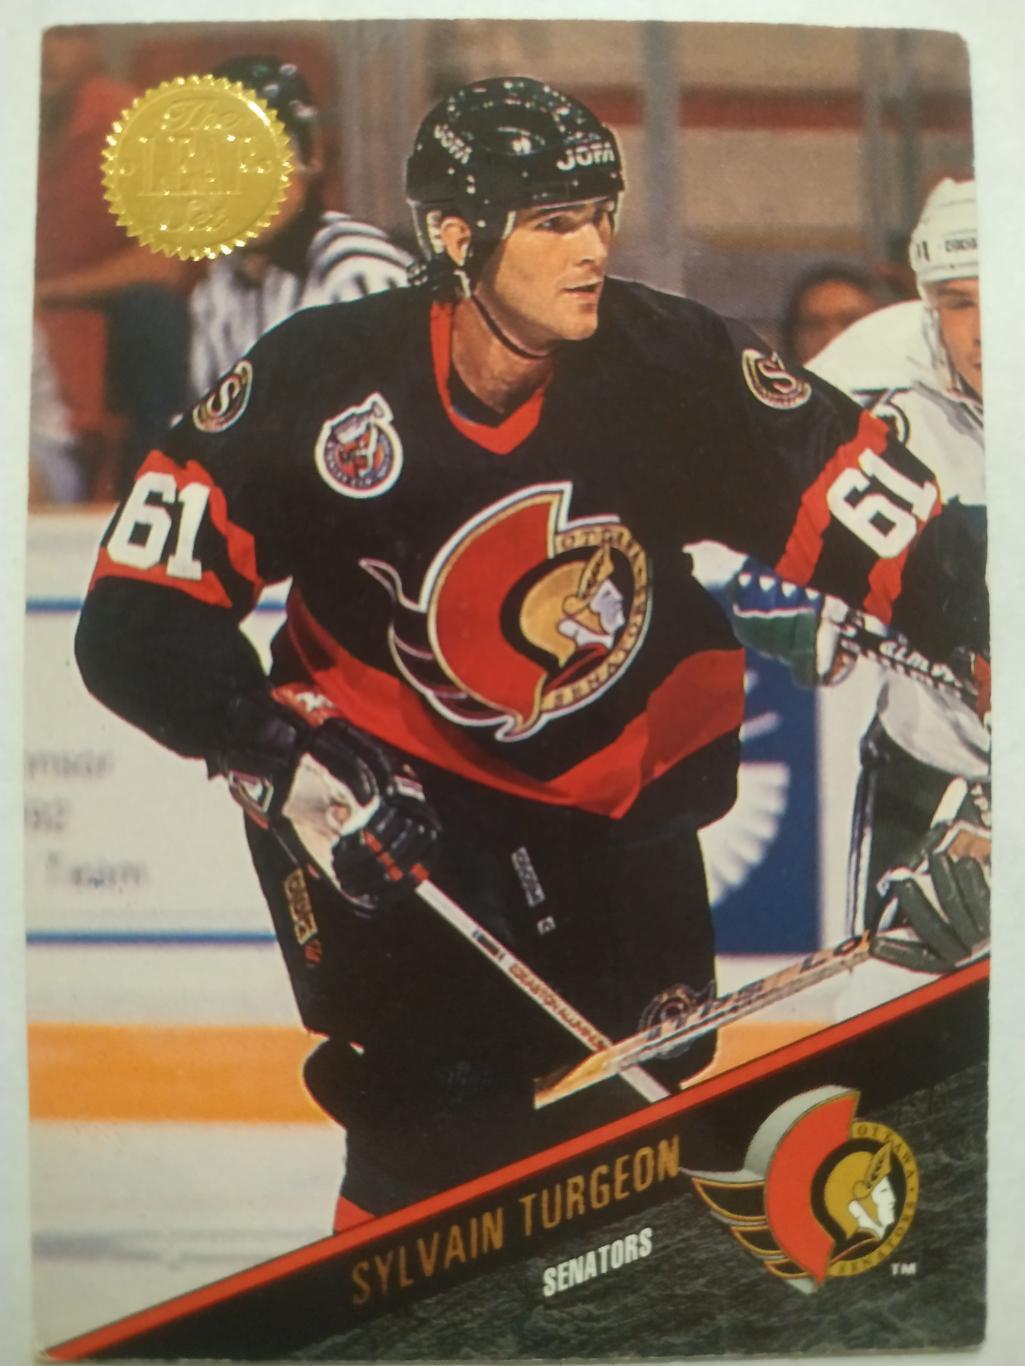 ХОККЕЙ КАРТОЧКА НХЛ LEAF SET SERIES ONE 1993-94 SYLVAIN TURGEON OTTAWA #74